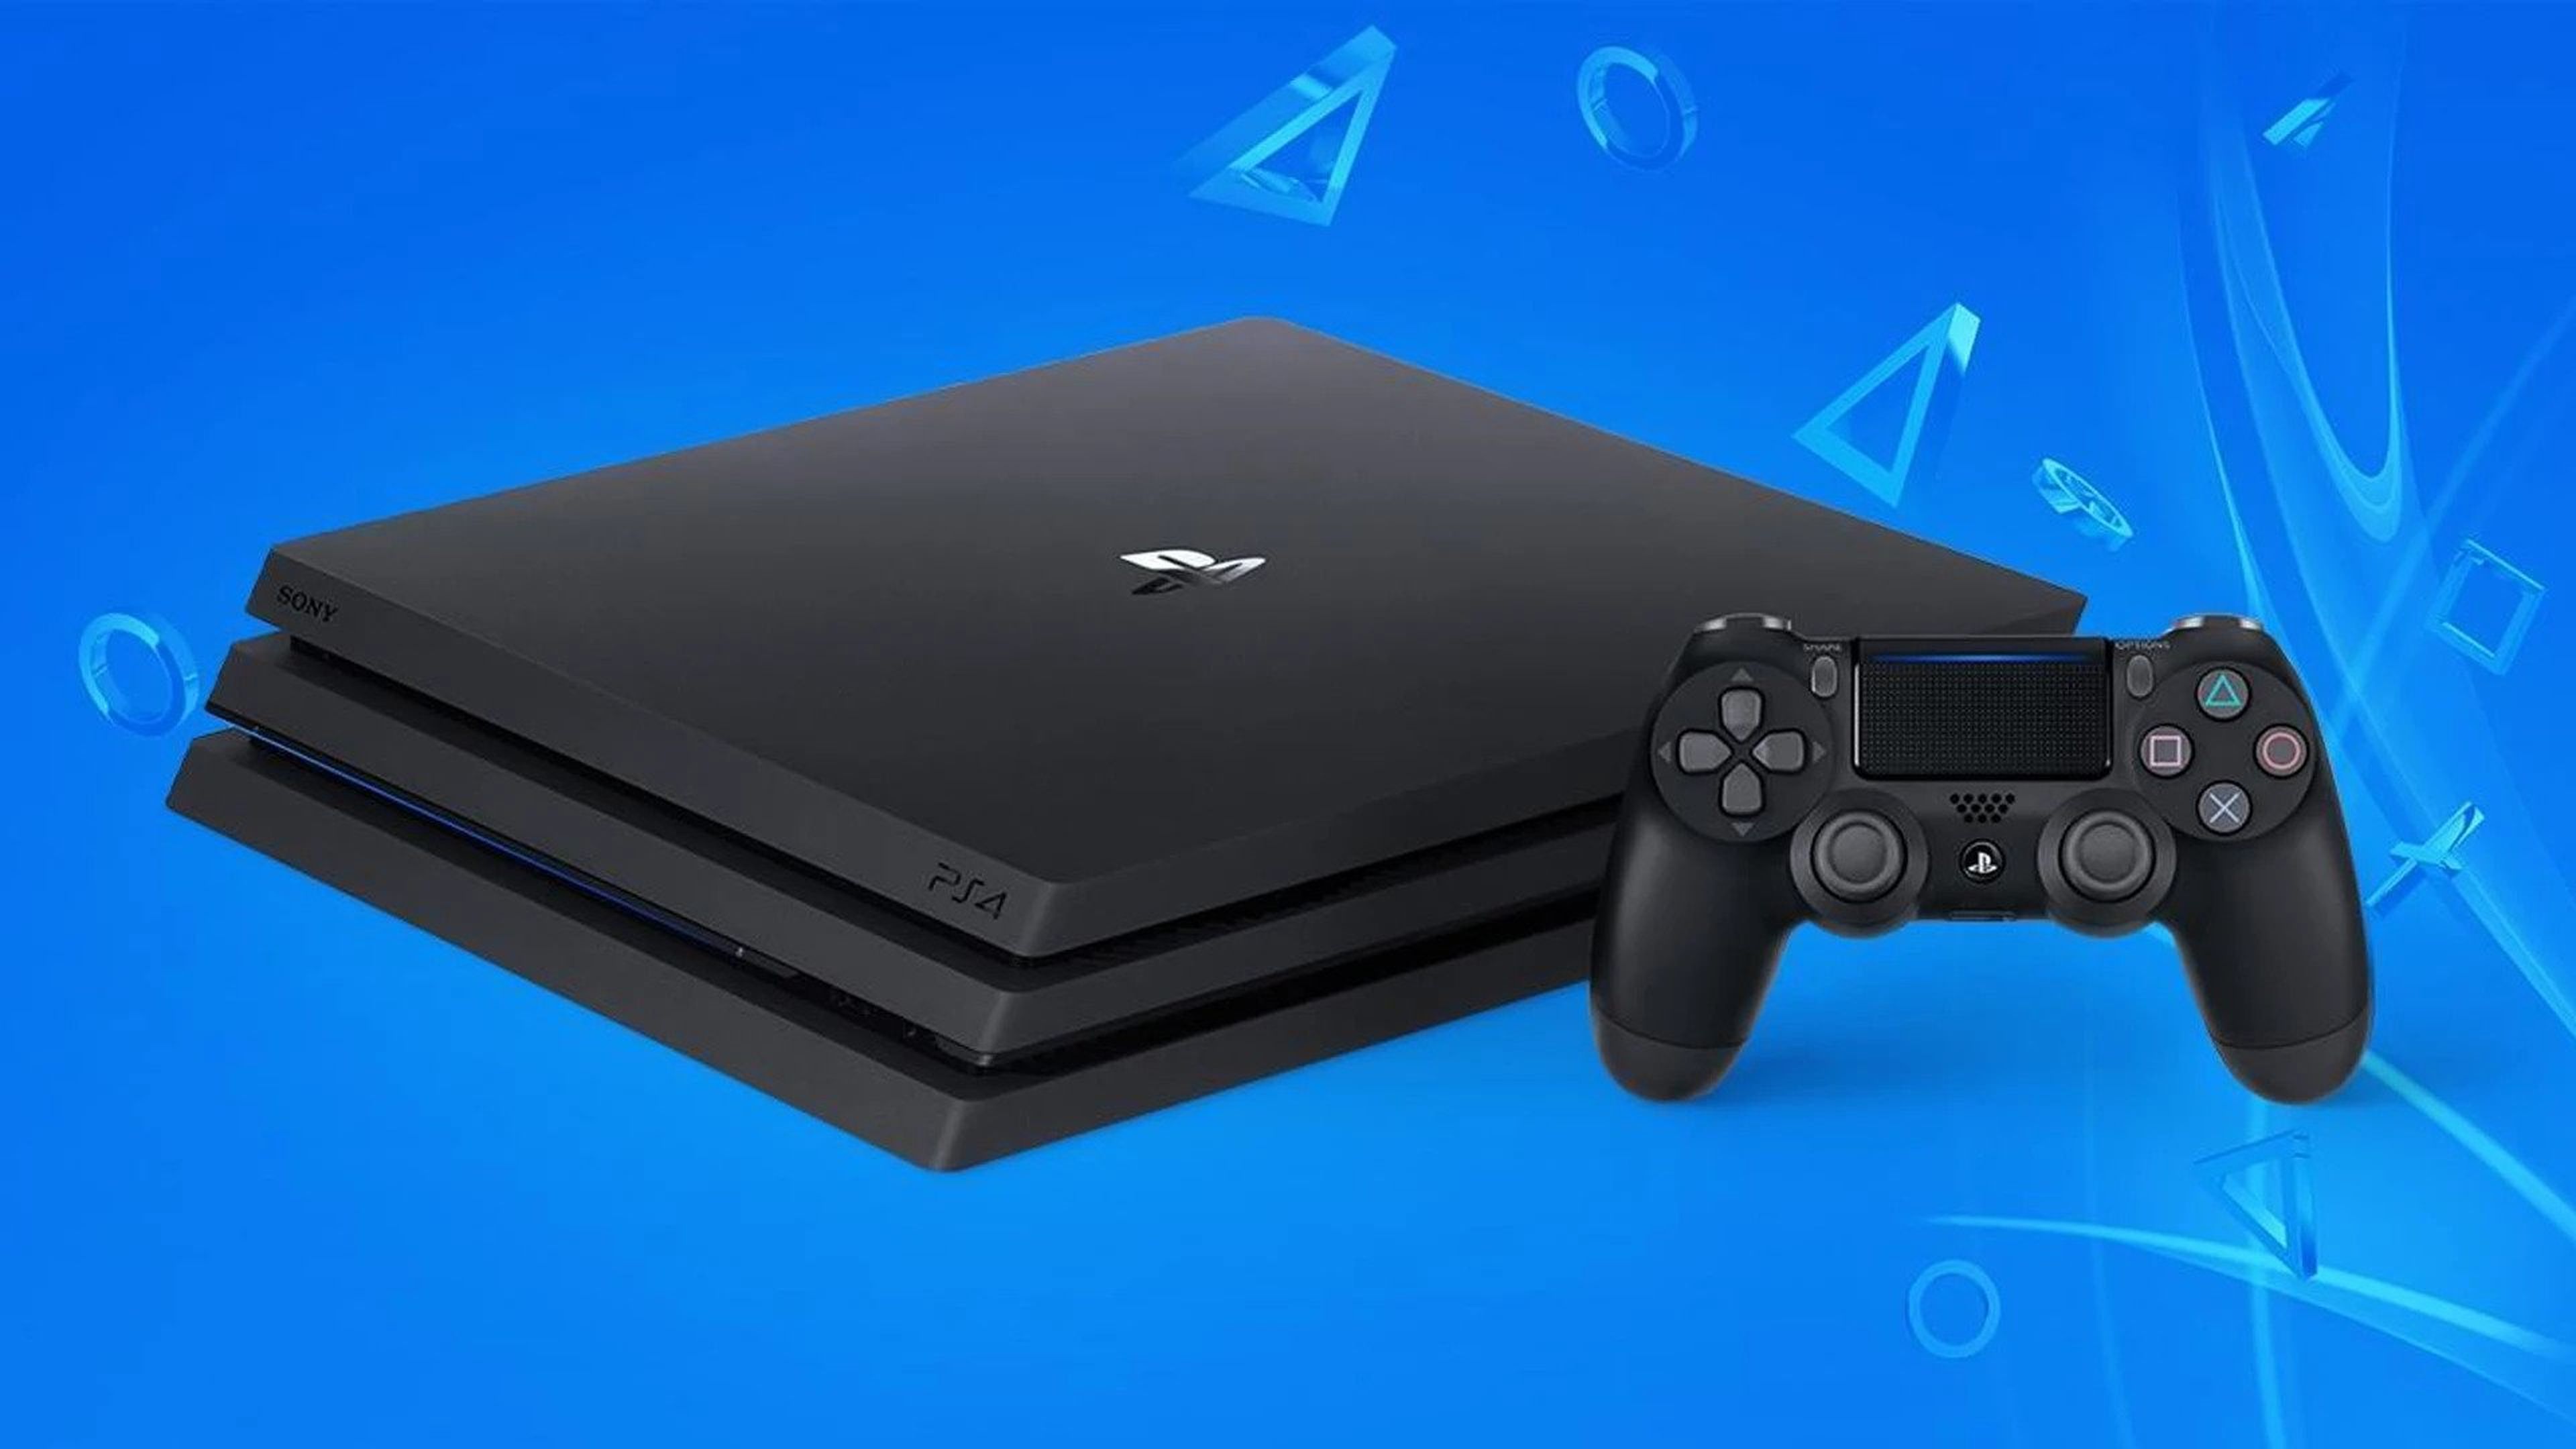  Consolas - PlayStation 4: Videojuegos